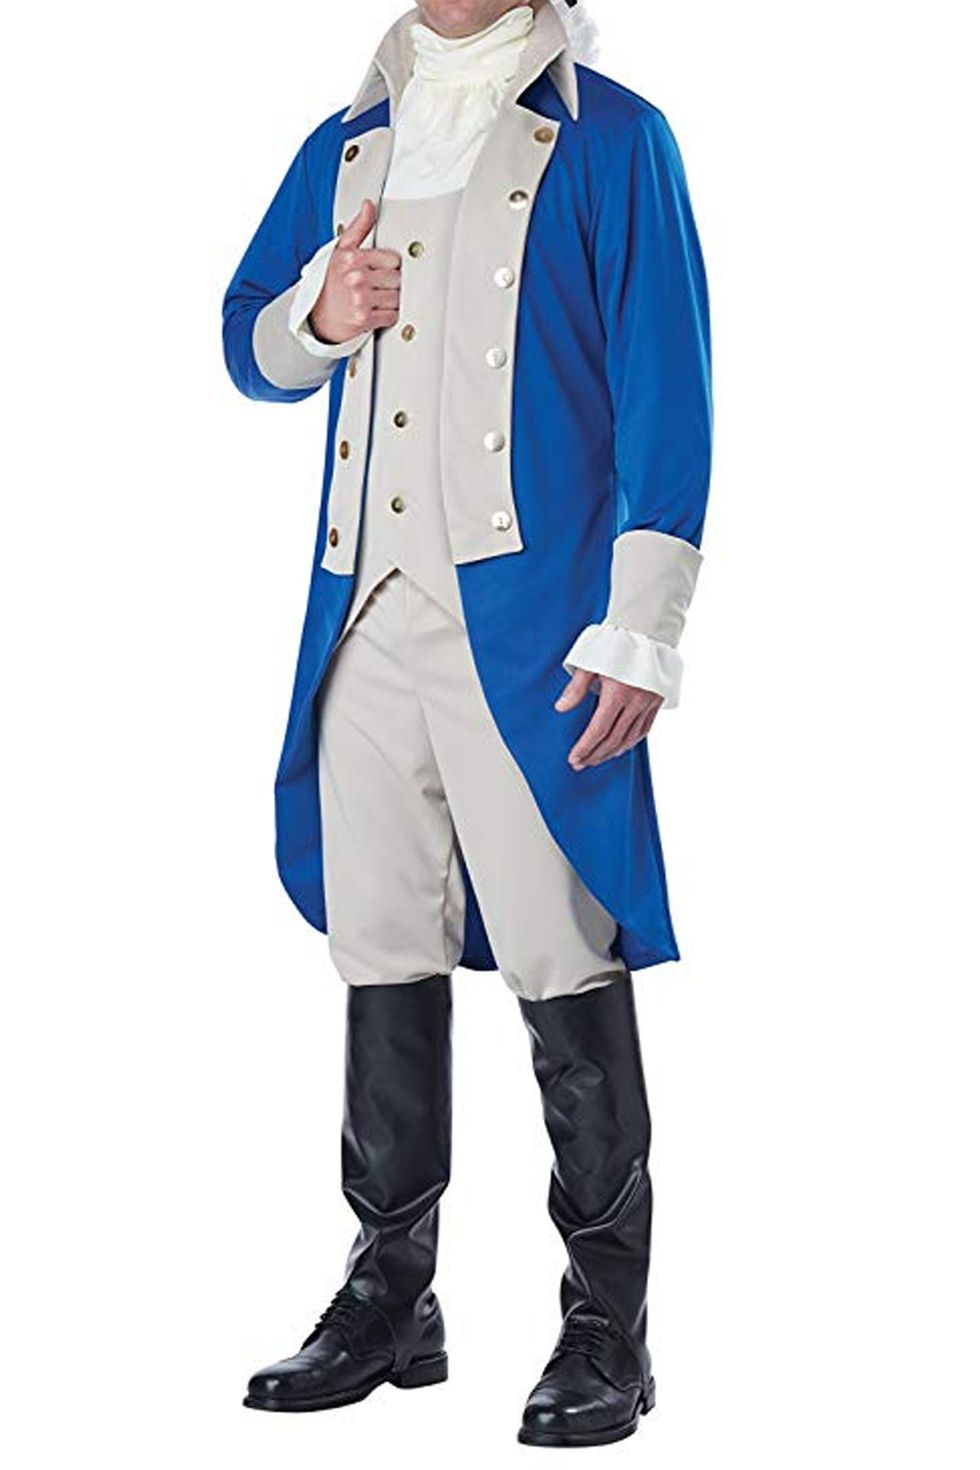 Men's Revolutionary Costume